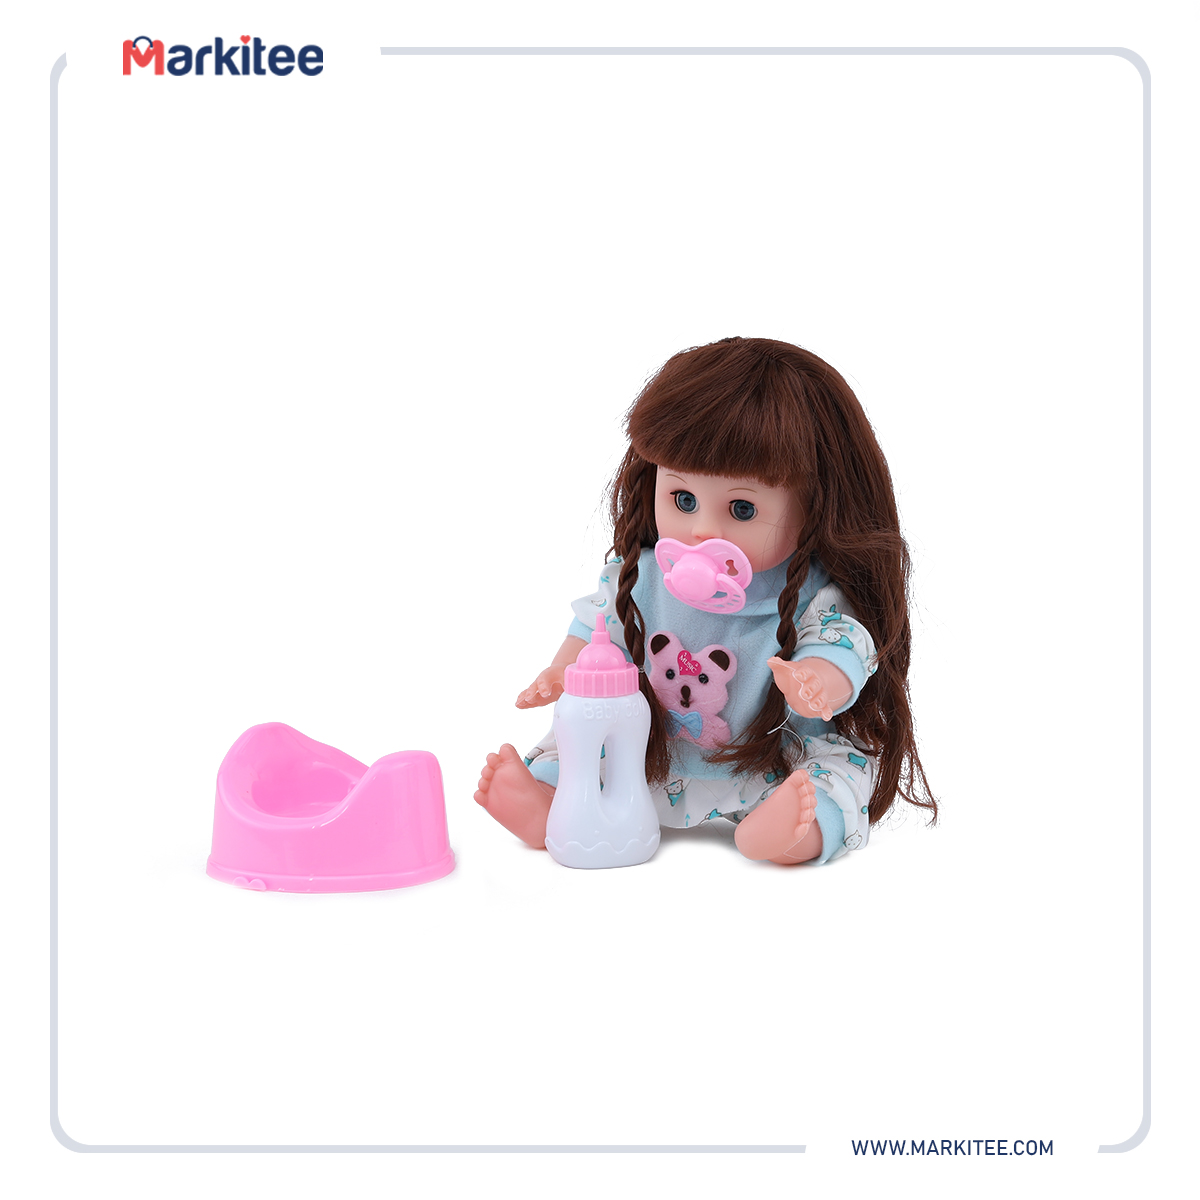 ماركيتي-markitee-20220531115847121_Markitee-Toys-Ty-409(10).jpg